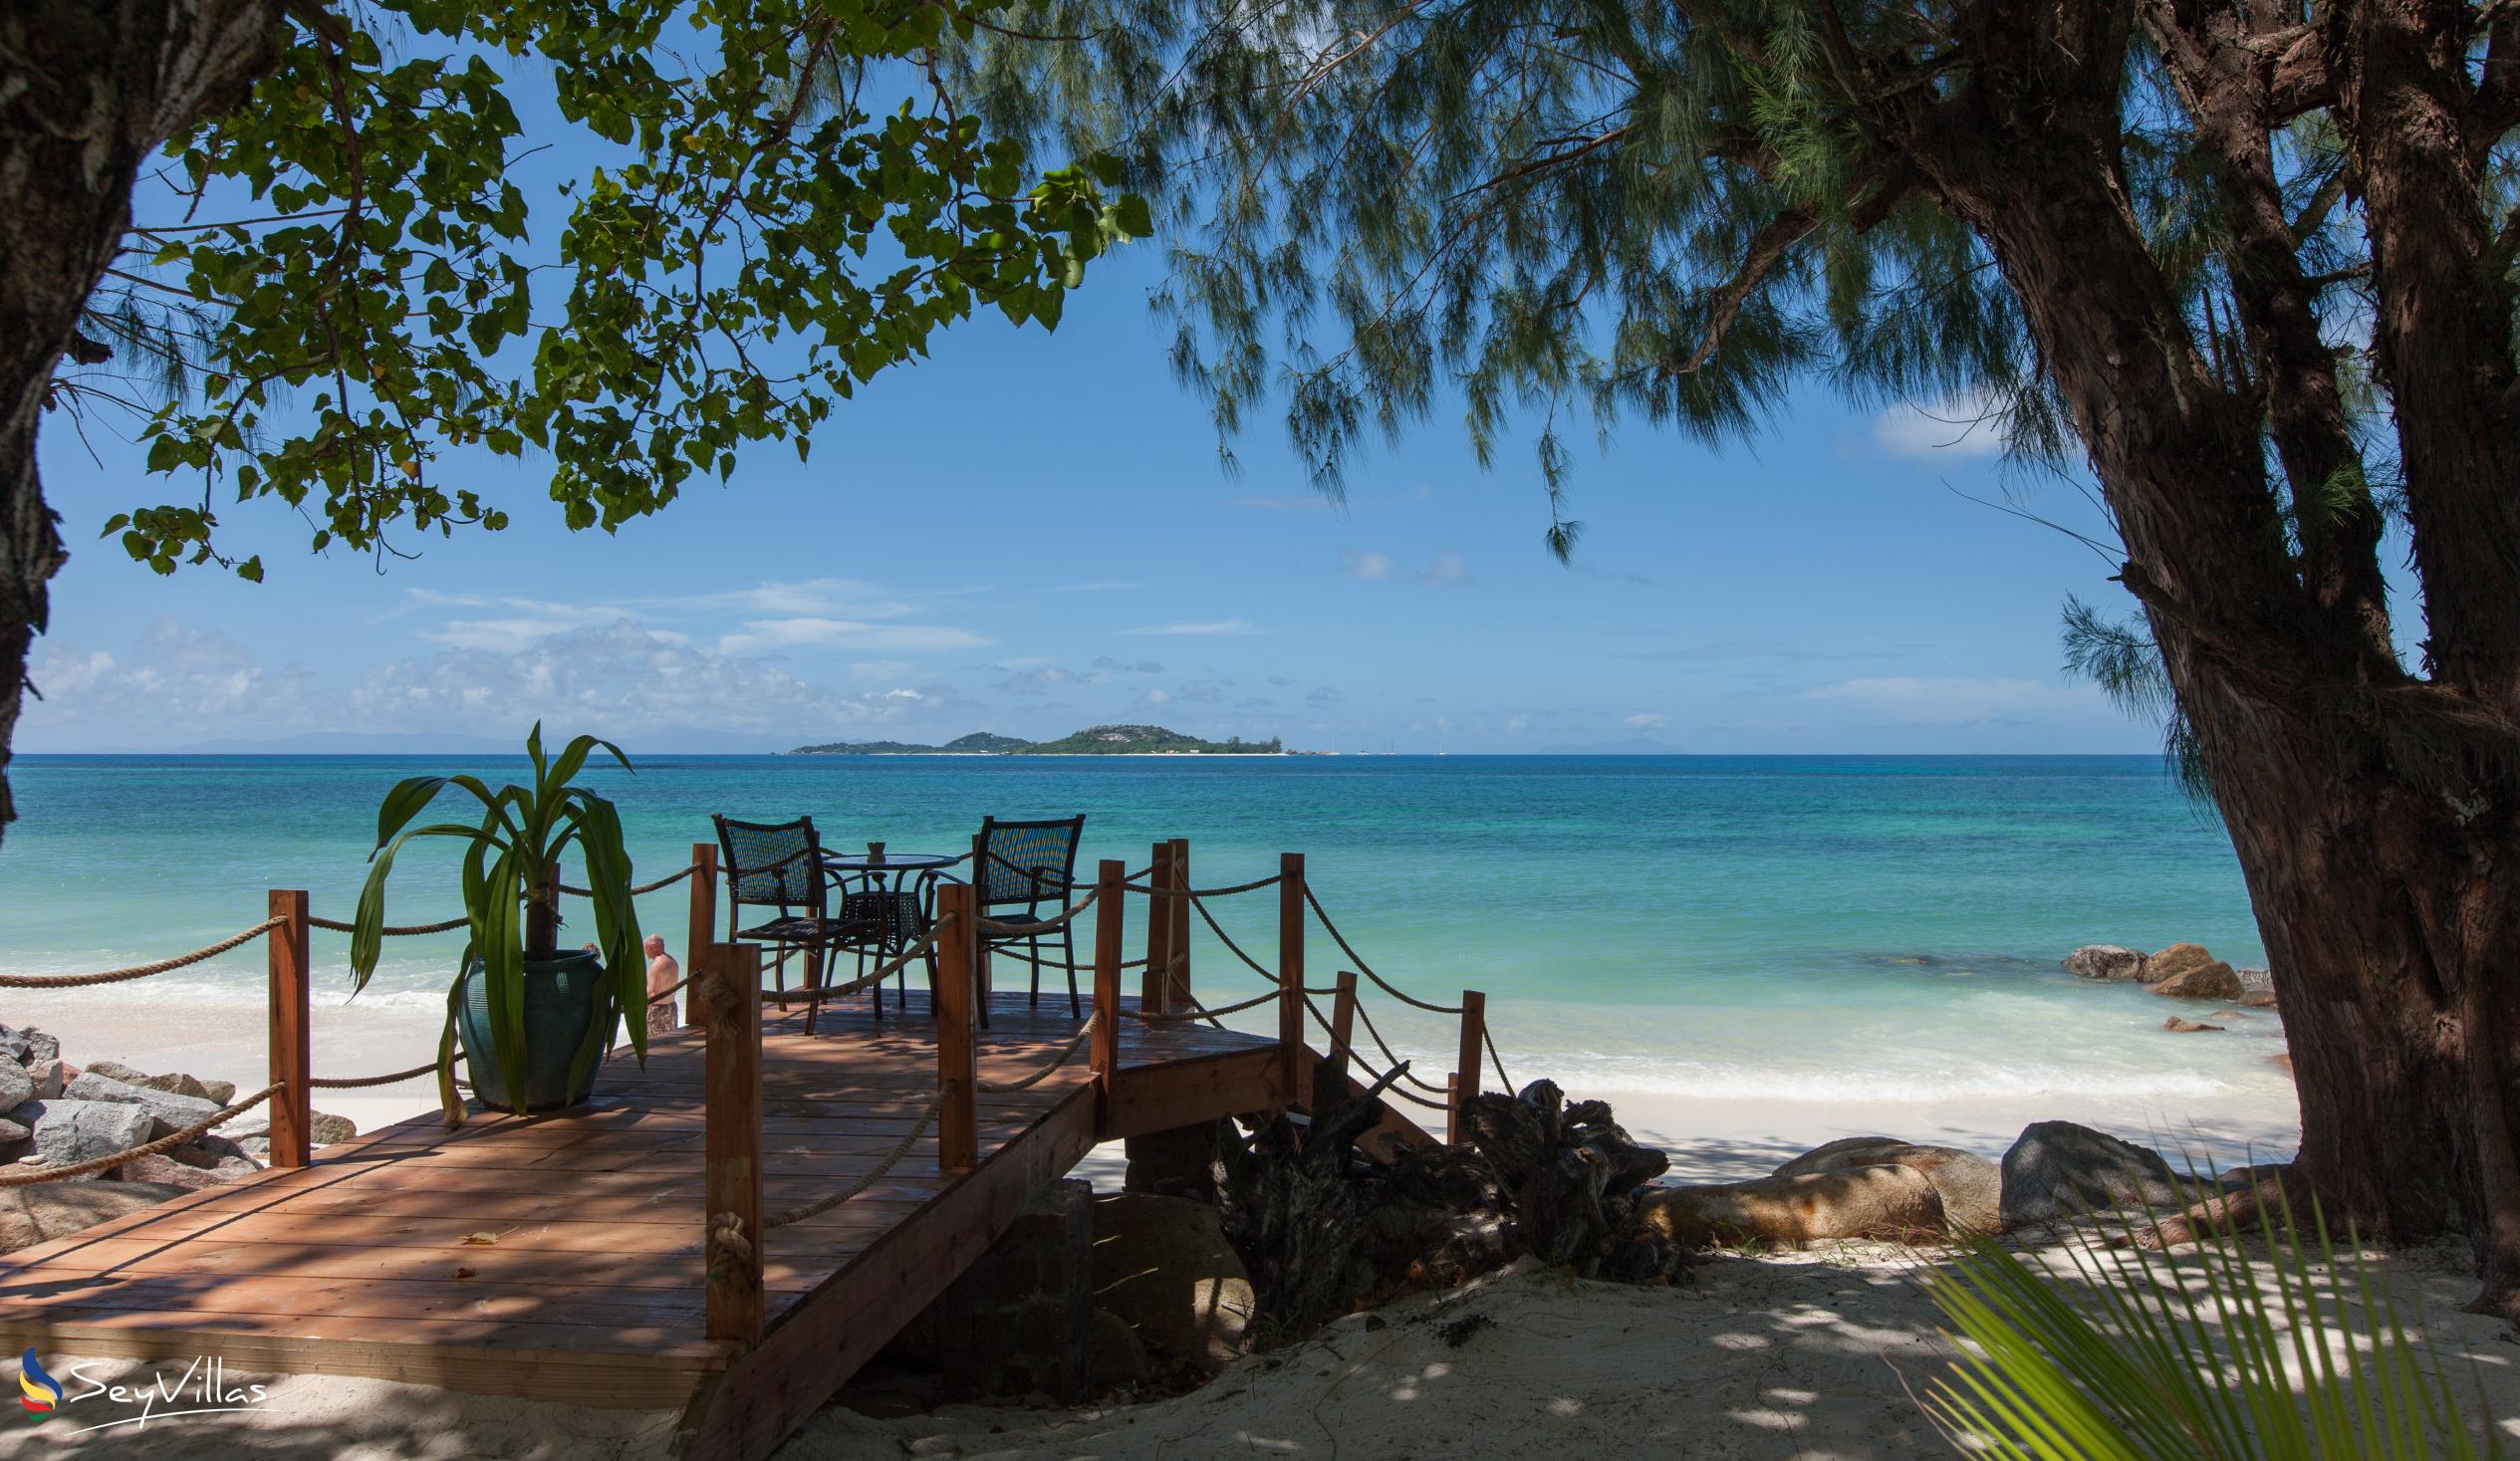 Foto 47: Castello Beach Hotel - Aussenbereich - Praslin (Seychellen)